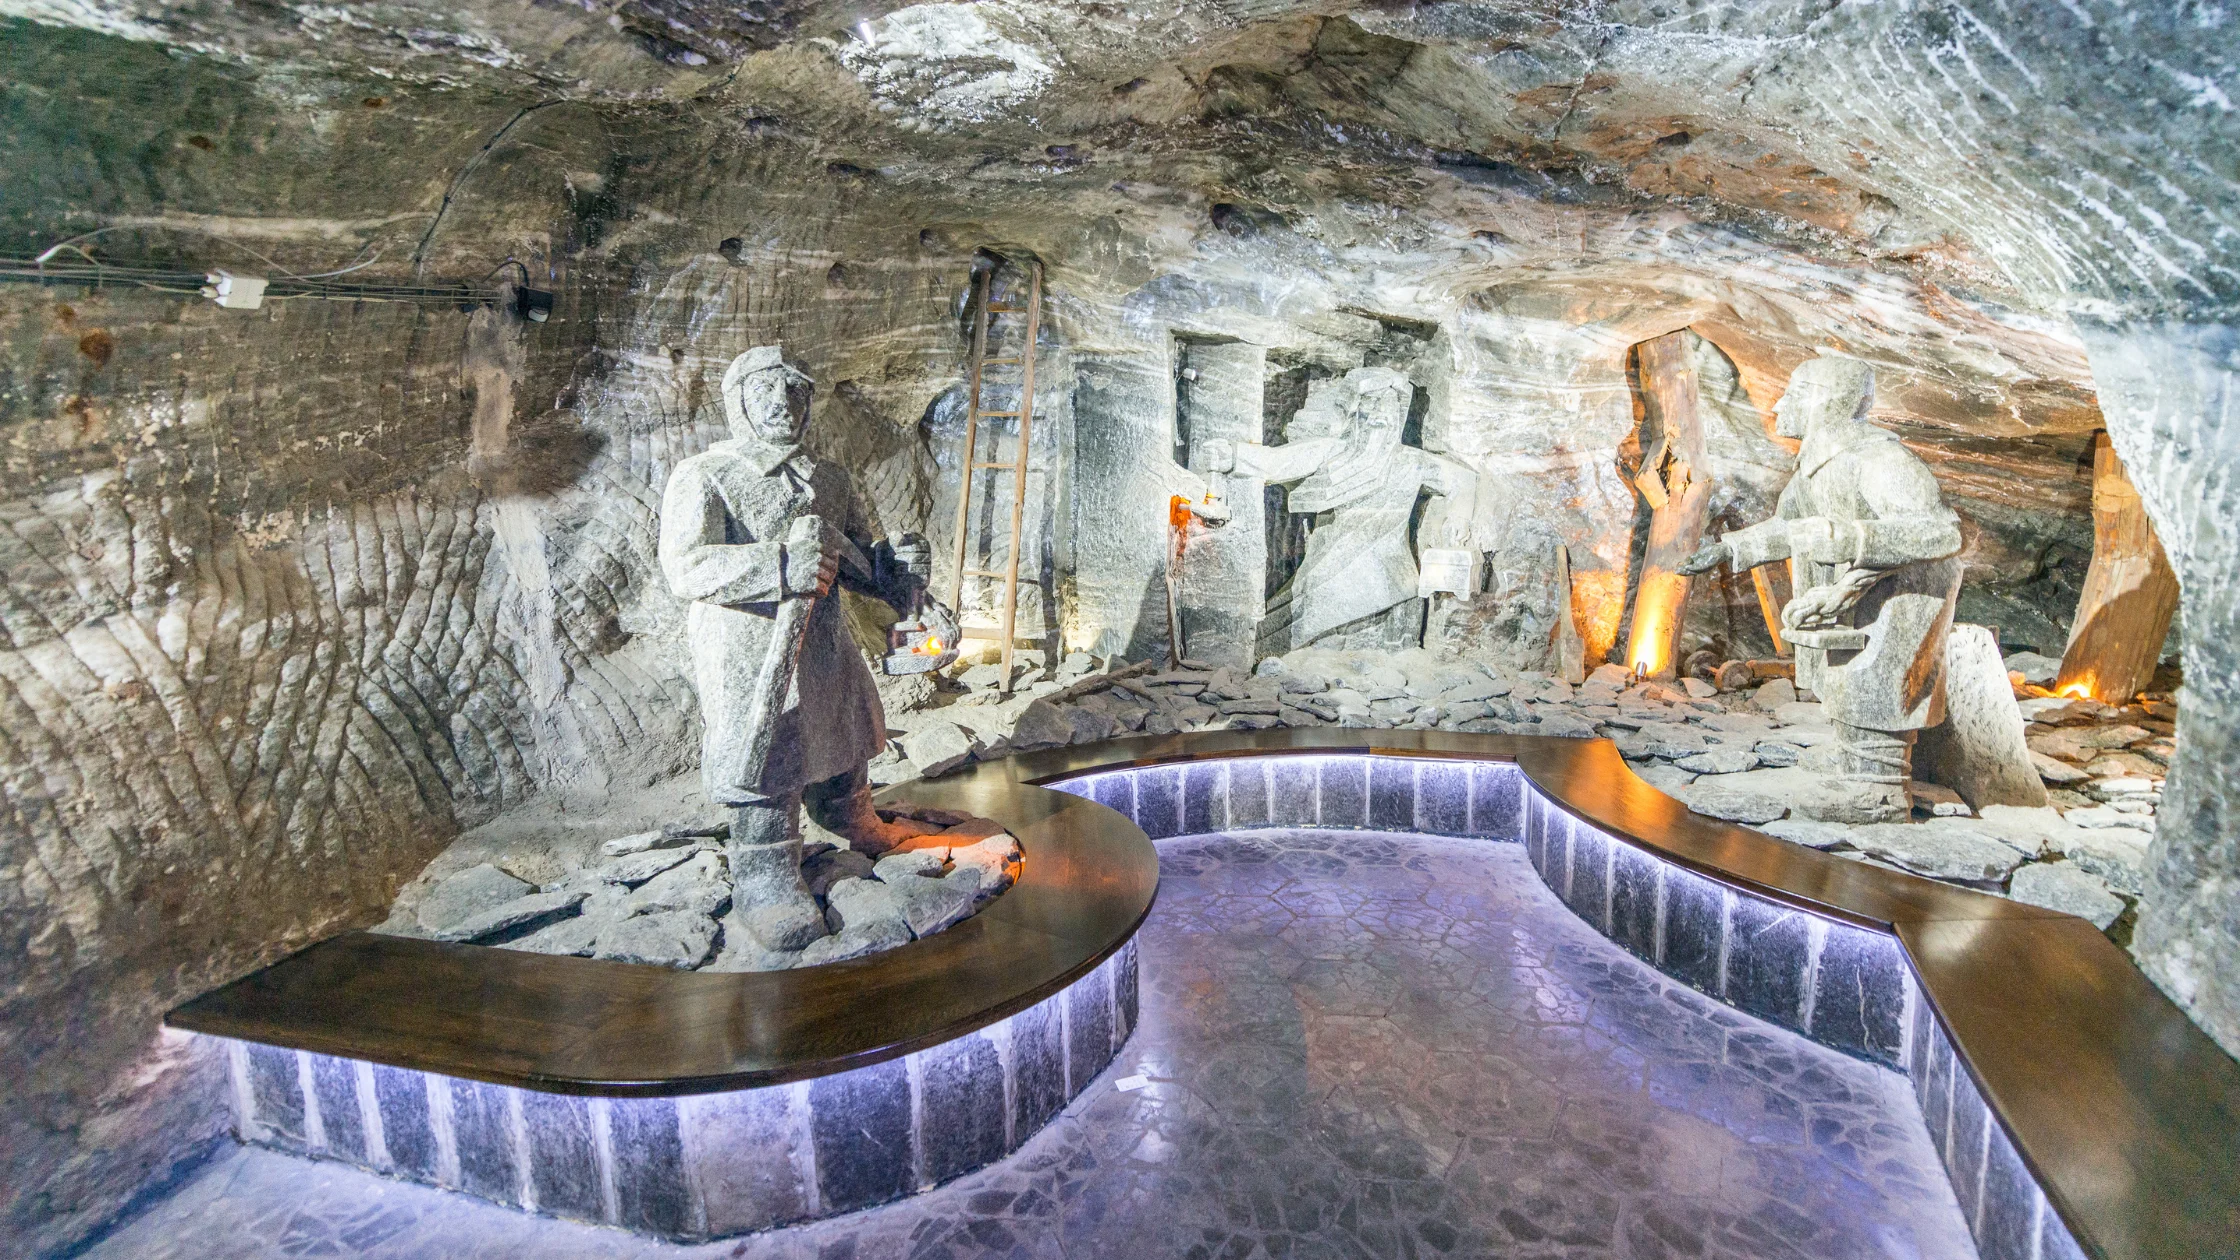 Wieliczka Salt Mine, Wieliczka, Poland